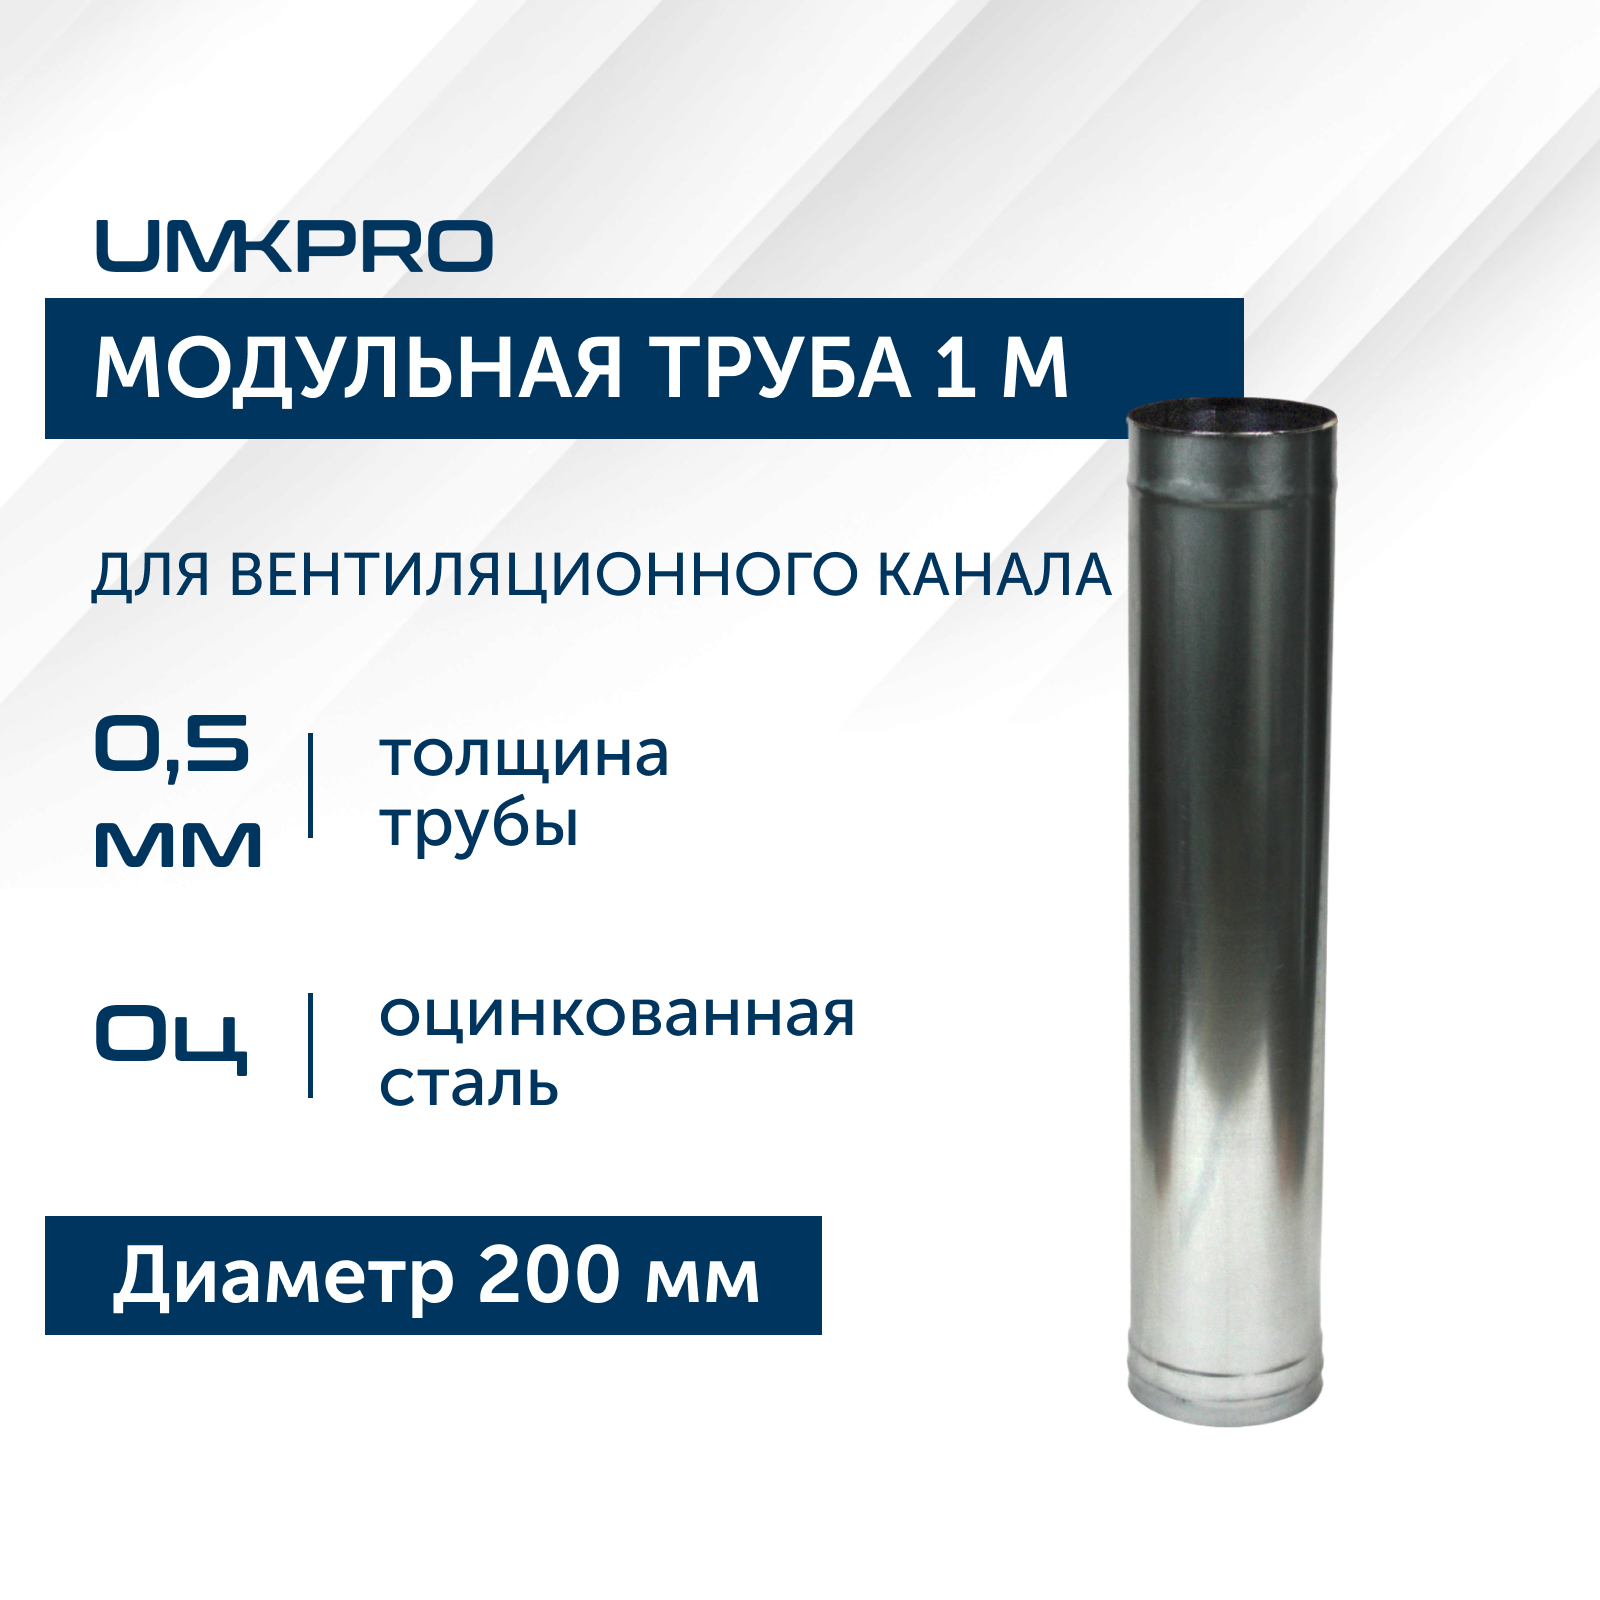 Труба модульная для дымохода 1 м UMKPRO, D 200, Оц/0,5мм модульная гостиная порту 18 мдф